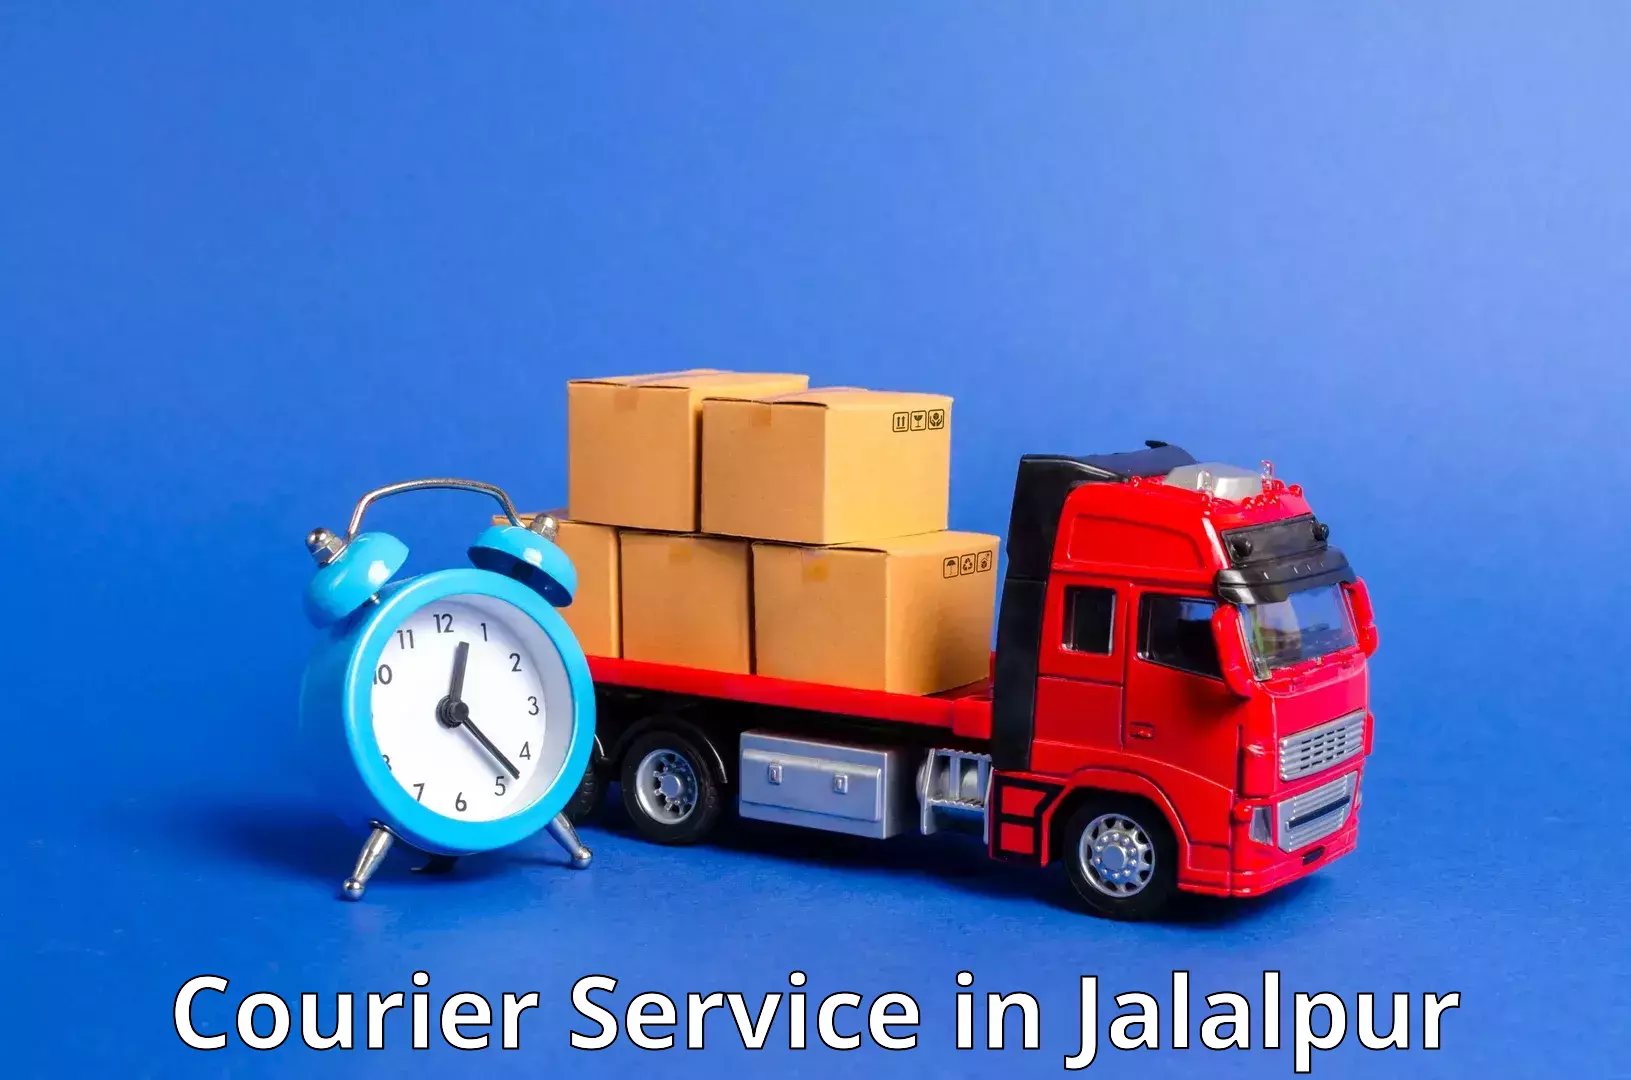 Innovative shipping solutions in Jalalpur